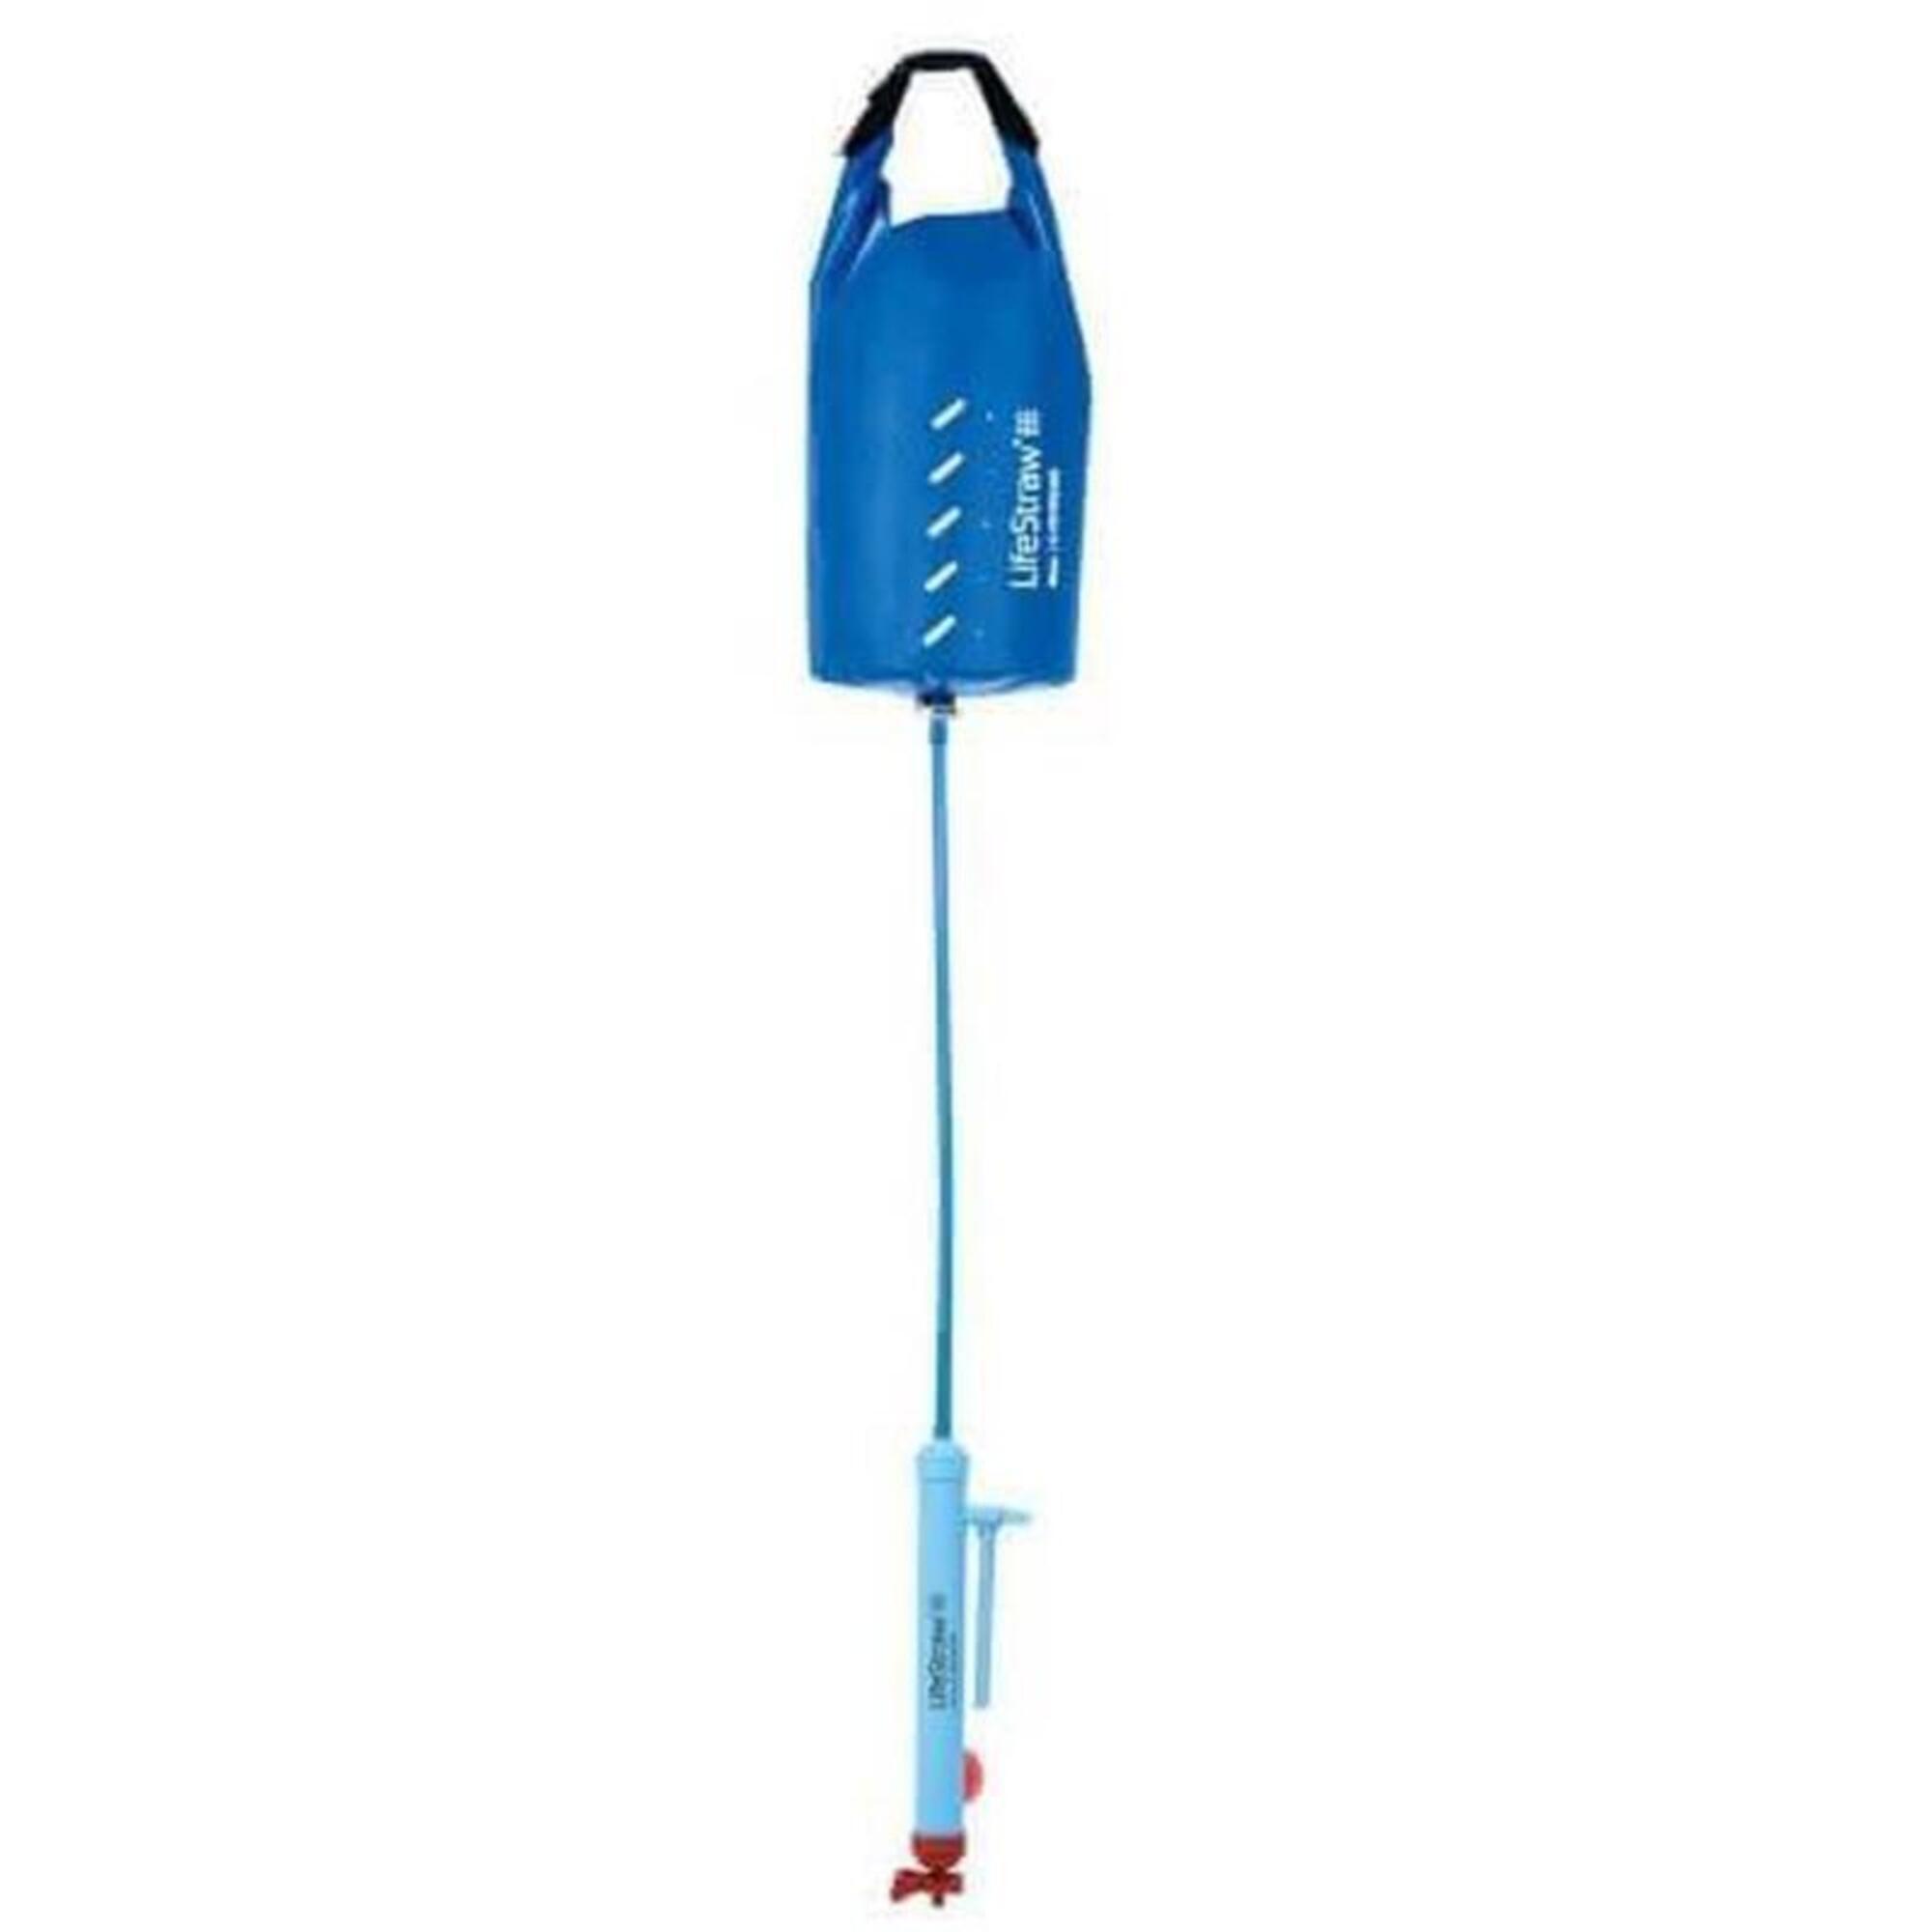 Mission waterzak met waterfilter - 5 liter - Blauw